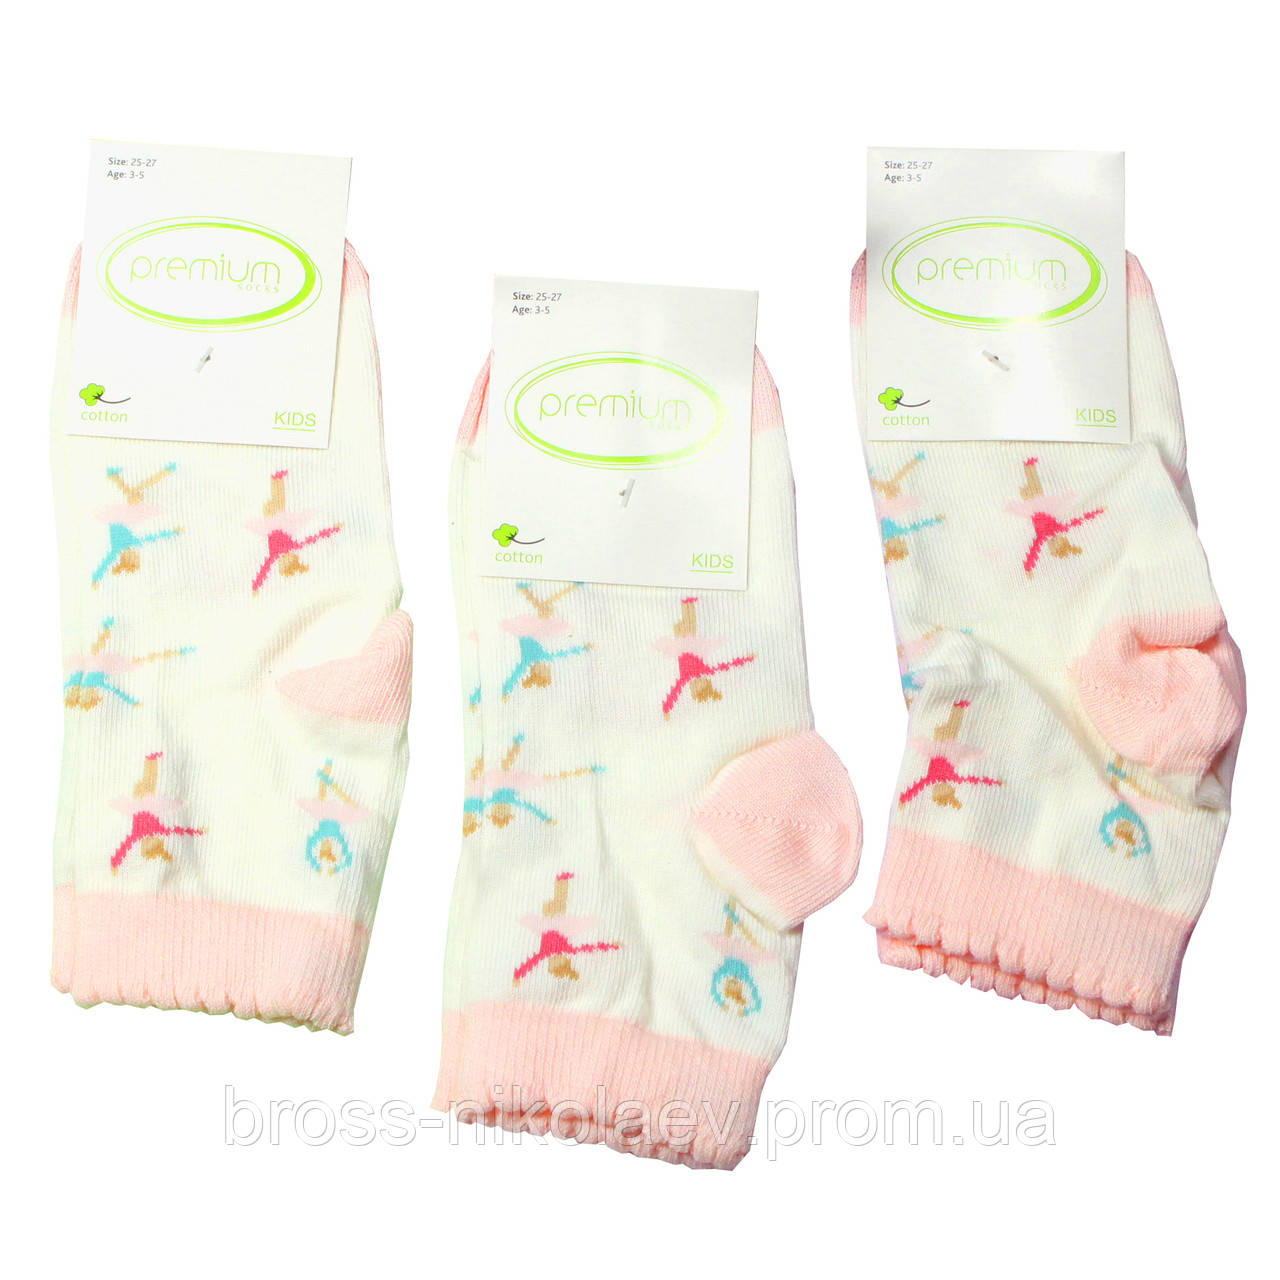 Високі дитячі шкарпетки з малюнками демі шкарпетки для дівчинки ТМ Premium (BROSS)